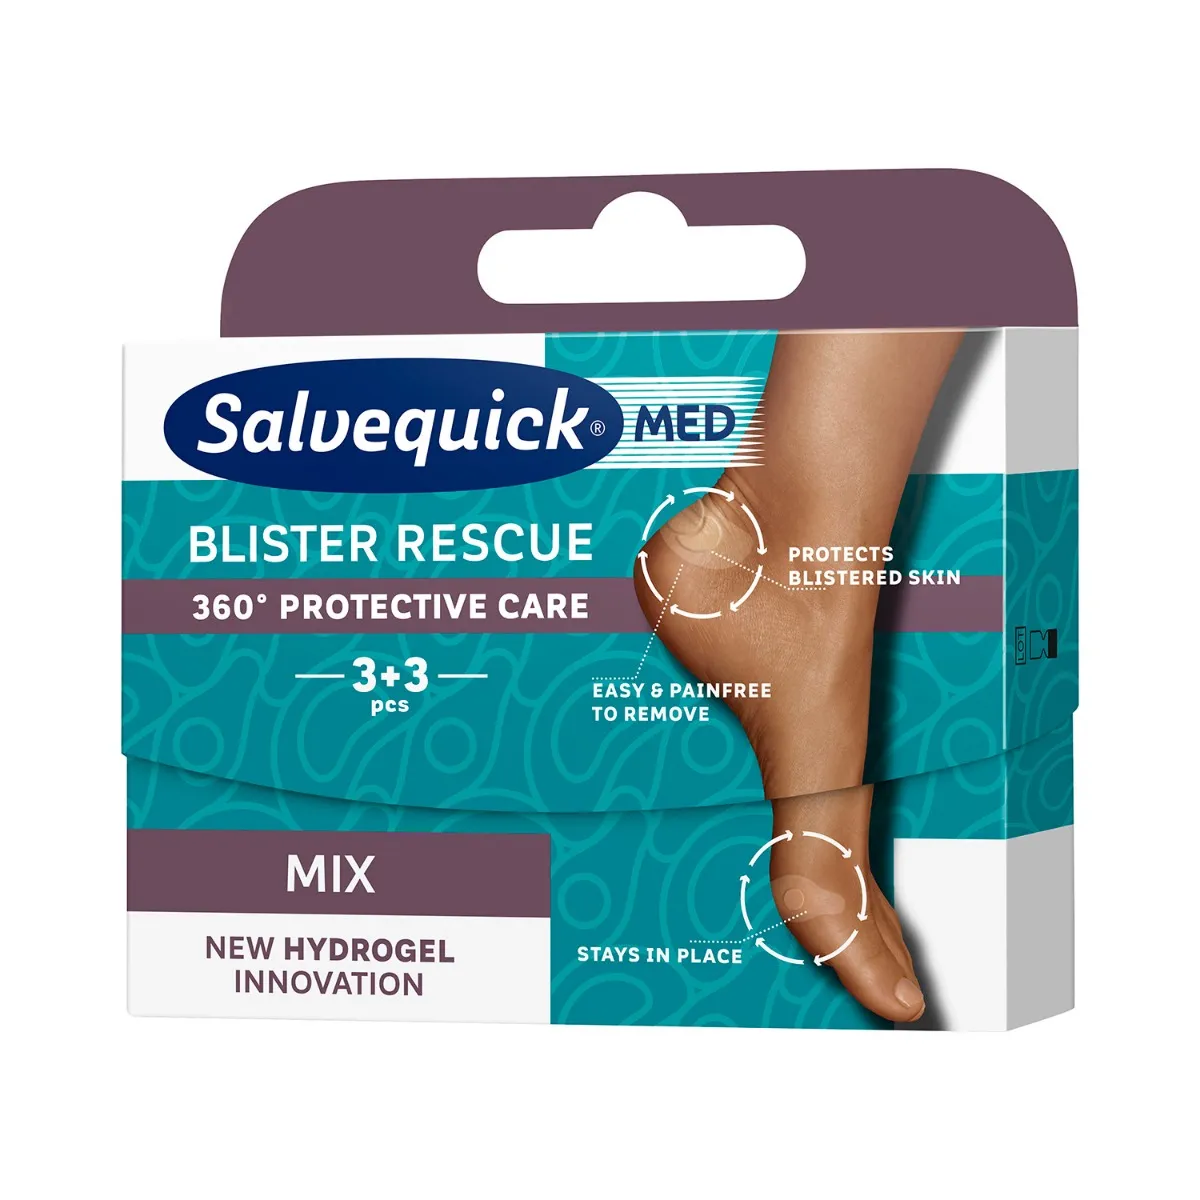 Salvequick Med Blister Rescue plastry na pęcherze, 6 sztuk